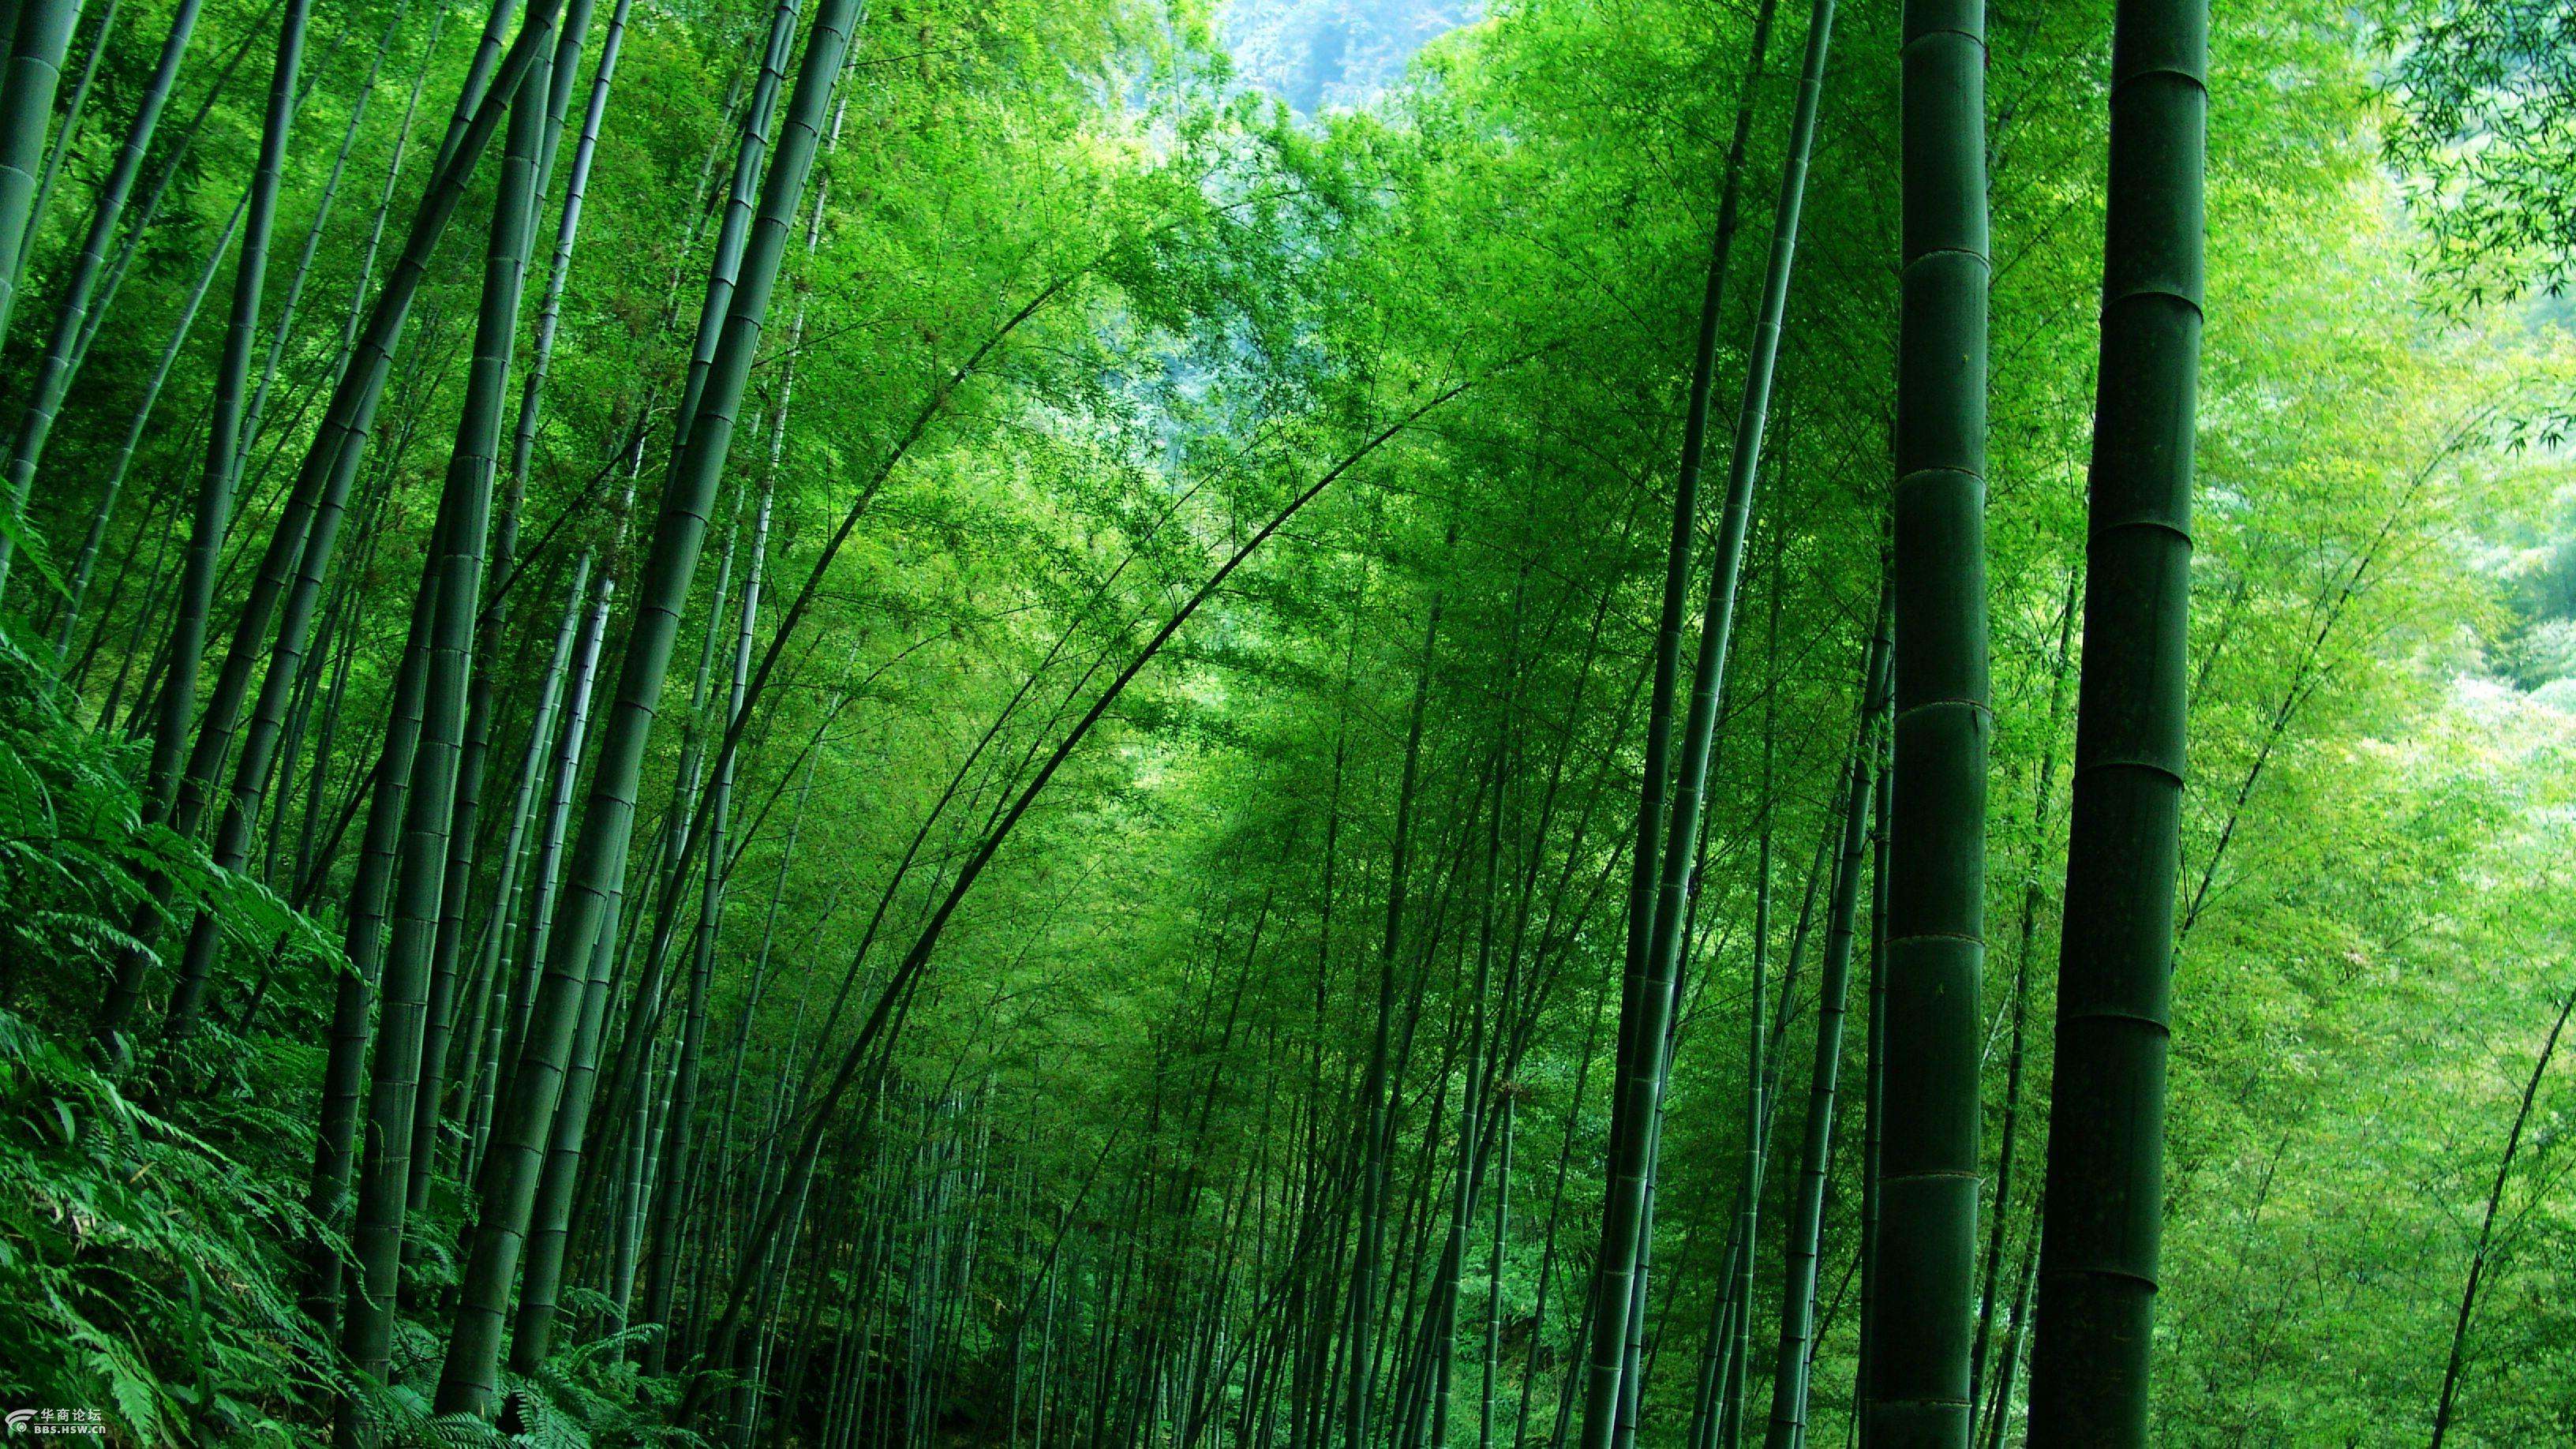 蜀山竹海如翡翠般透彻的绿